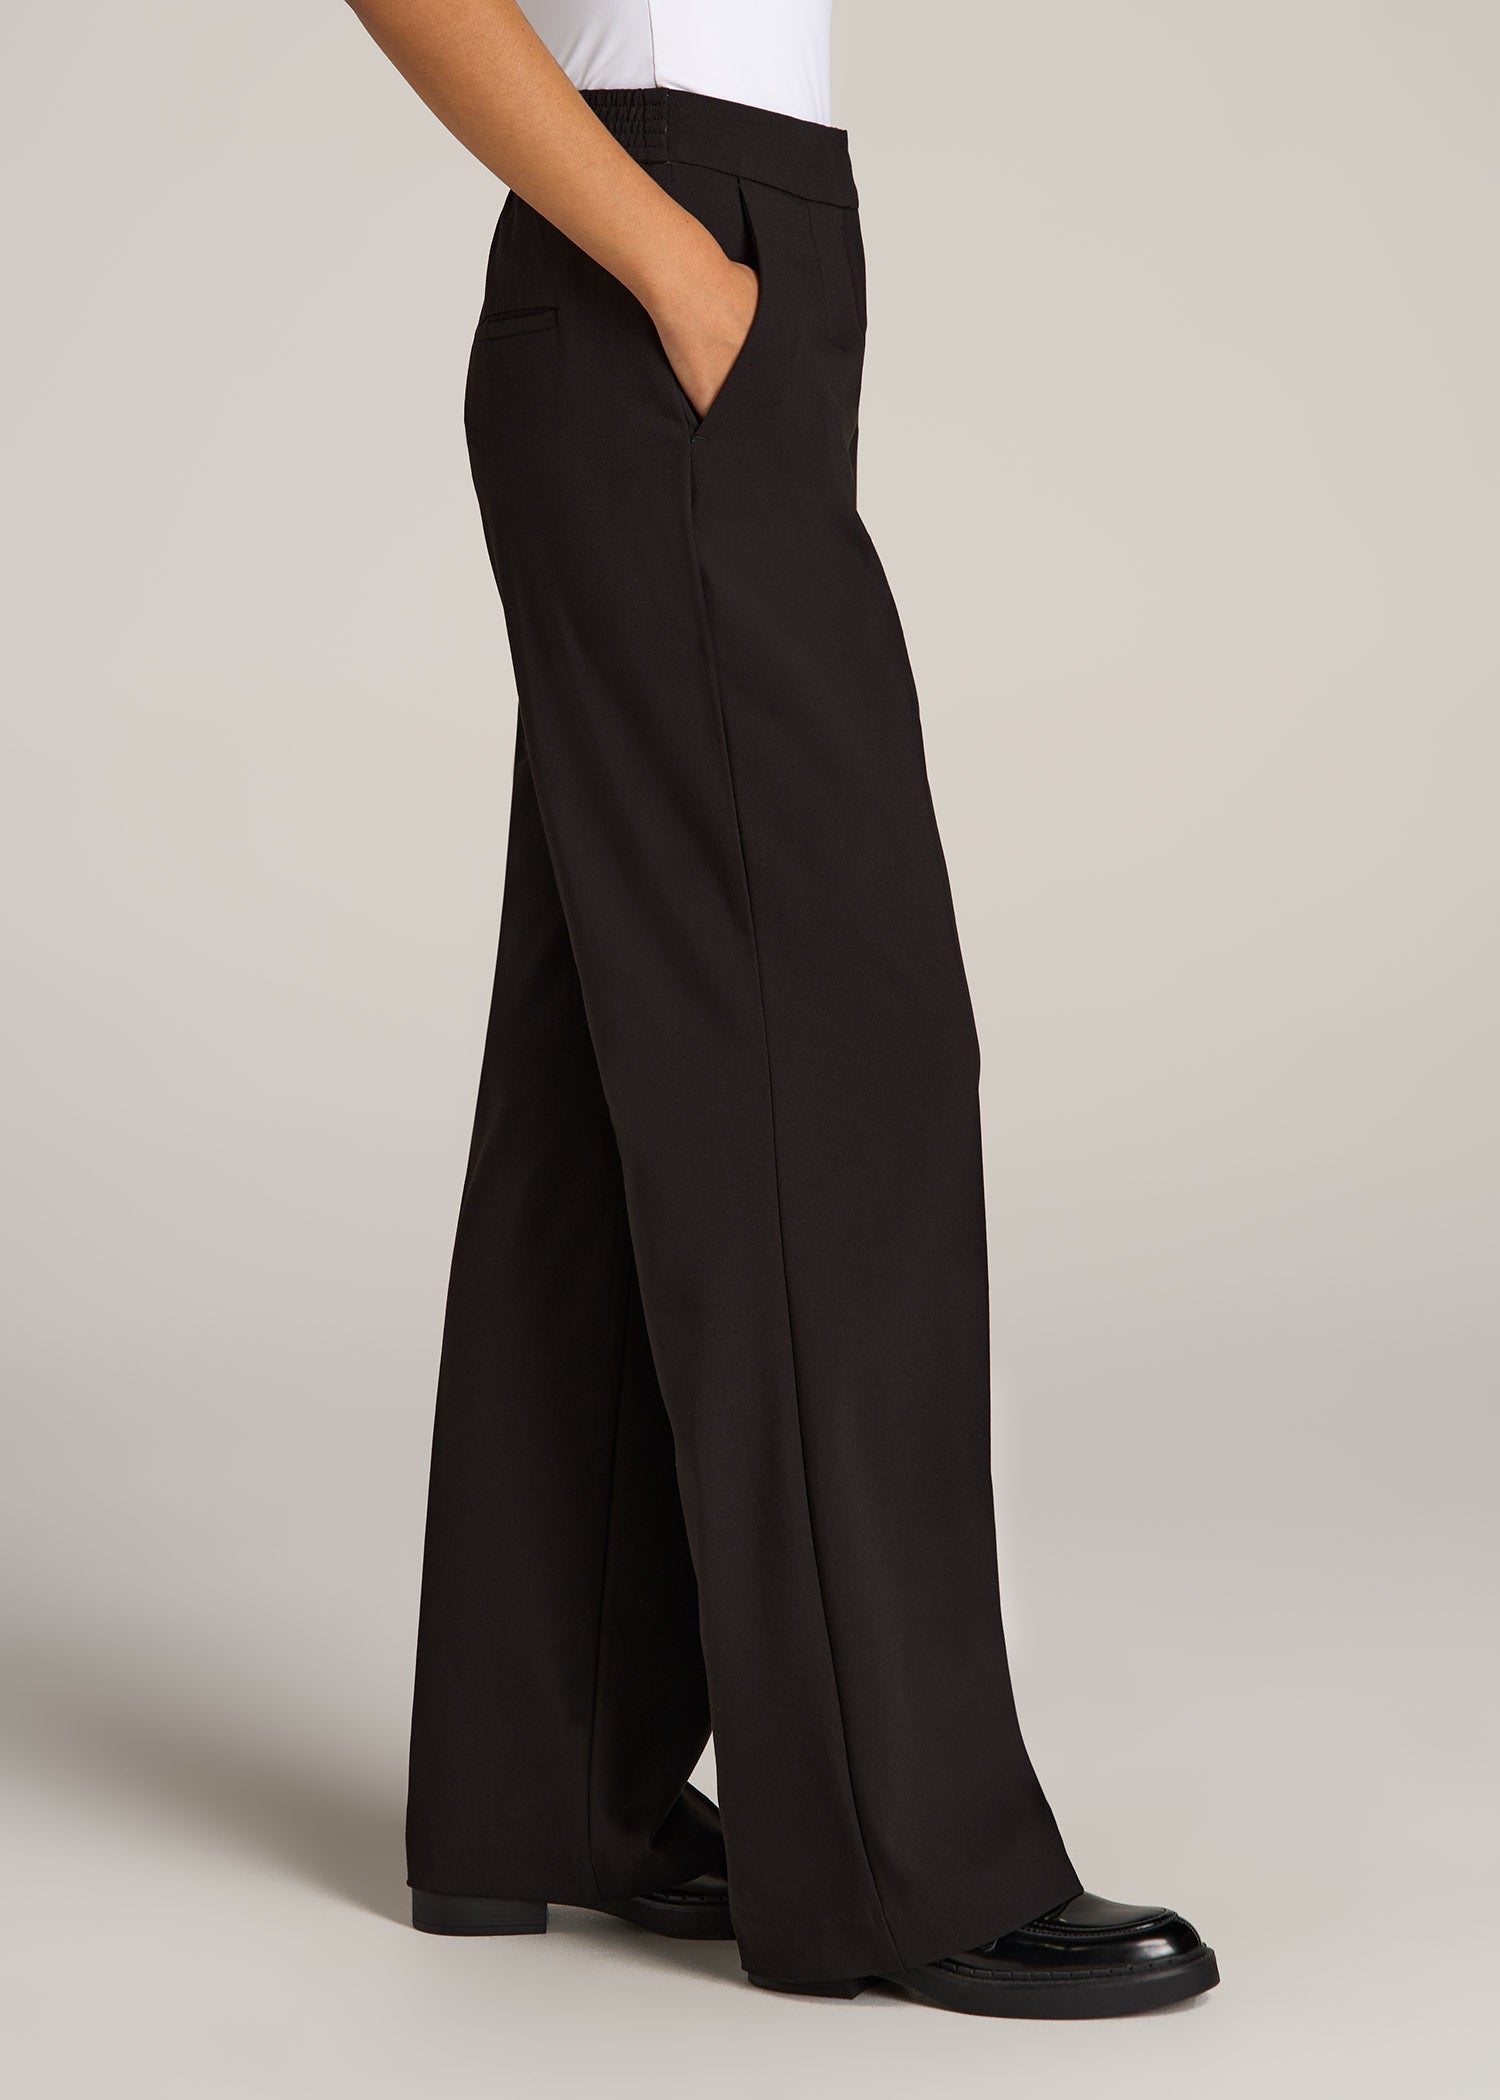 Vinci Mens Black Pleated Dress Pants Suit Pants Super 150s OP-900